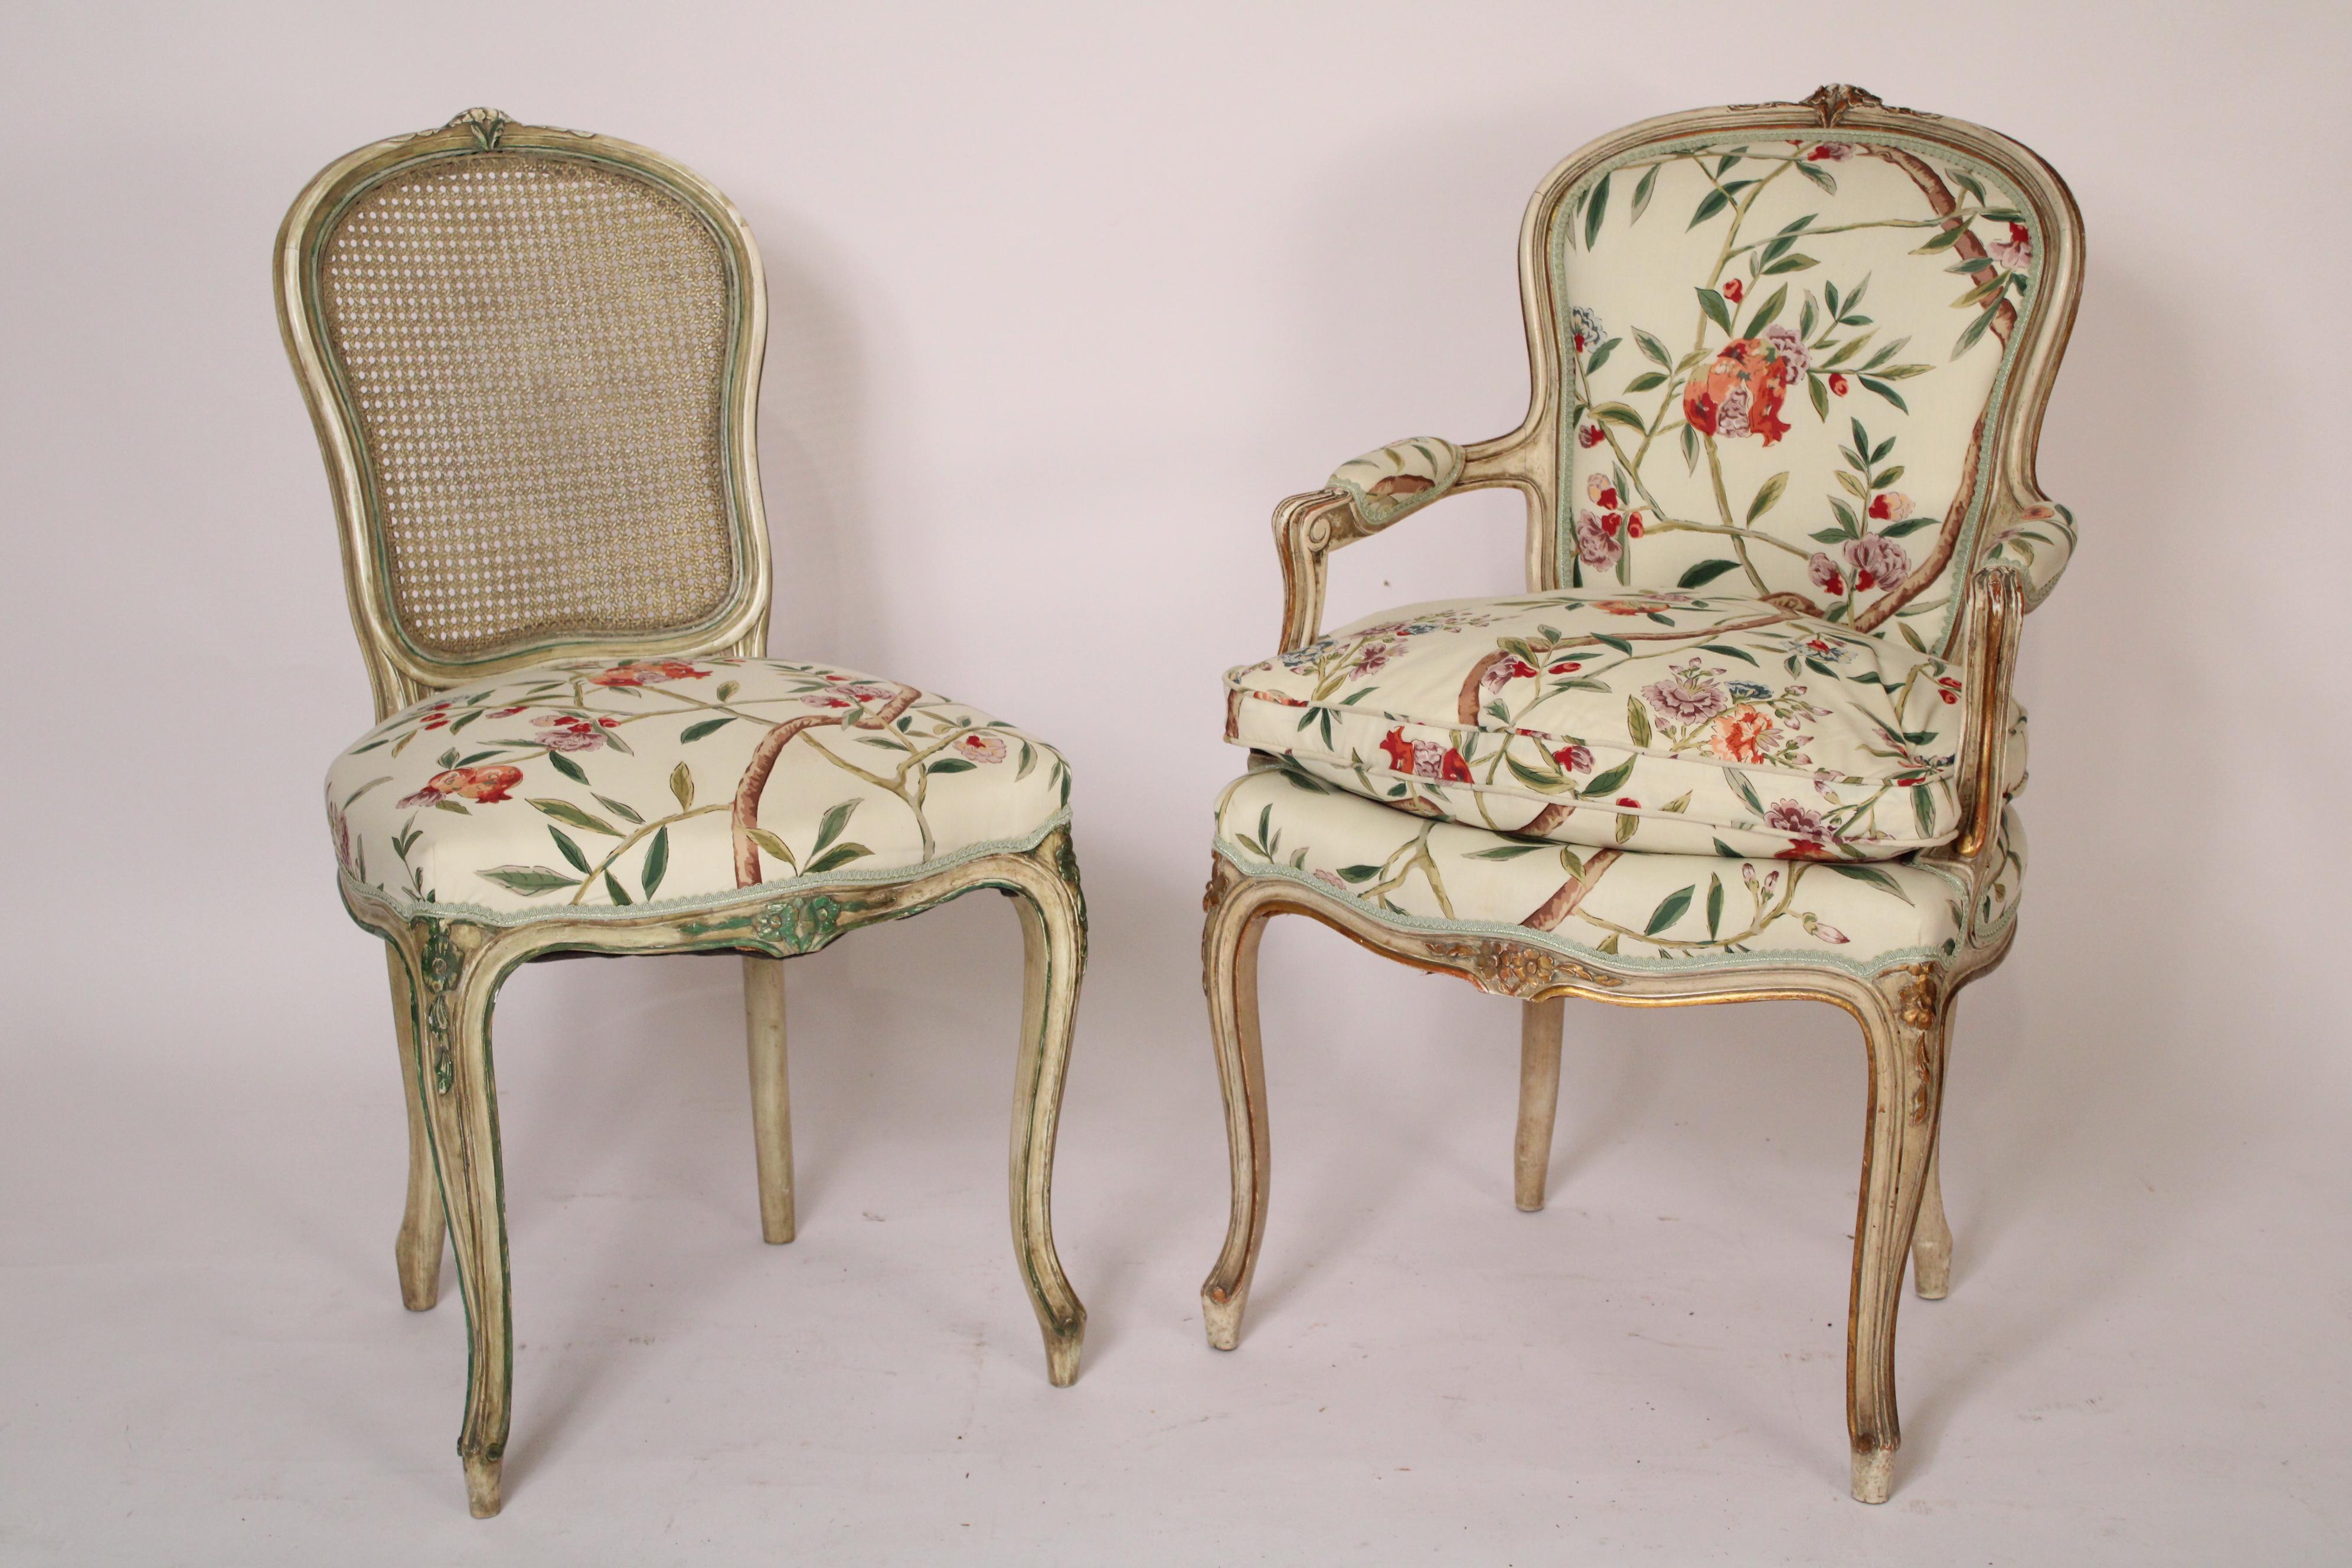 Ensemble de 8 chaises de salle à manger peintes de style Louis XV, vers les années 1960. Les fauteuils ont des sièges partiellement garnis de duvet et reposent sur des pieds cabriole. Dimensions des fauteuils, hauteur 37.5